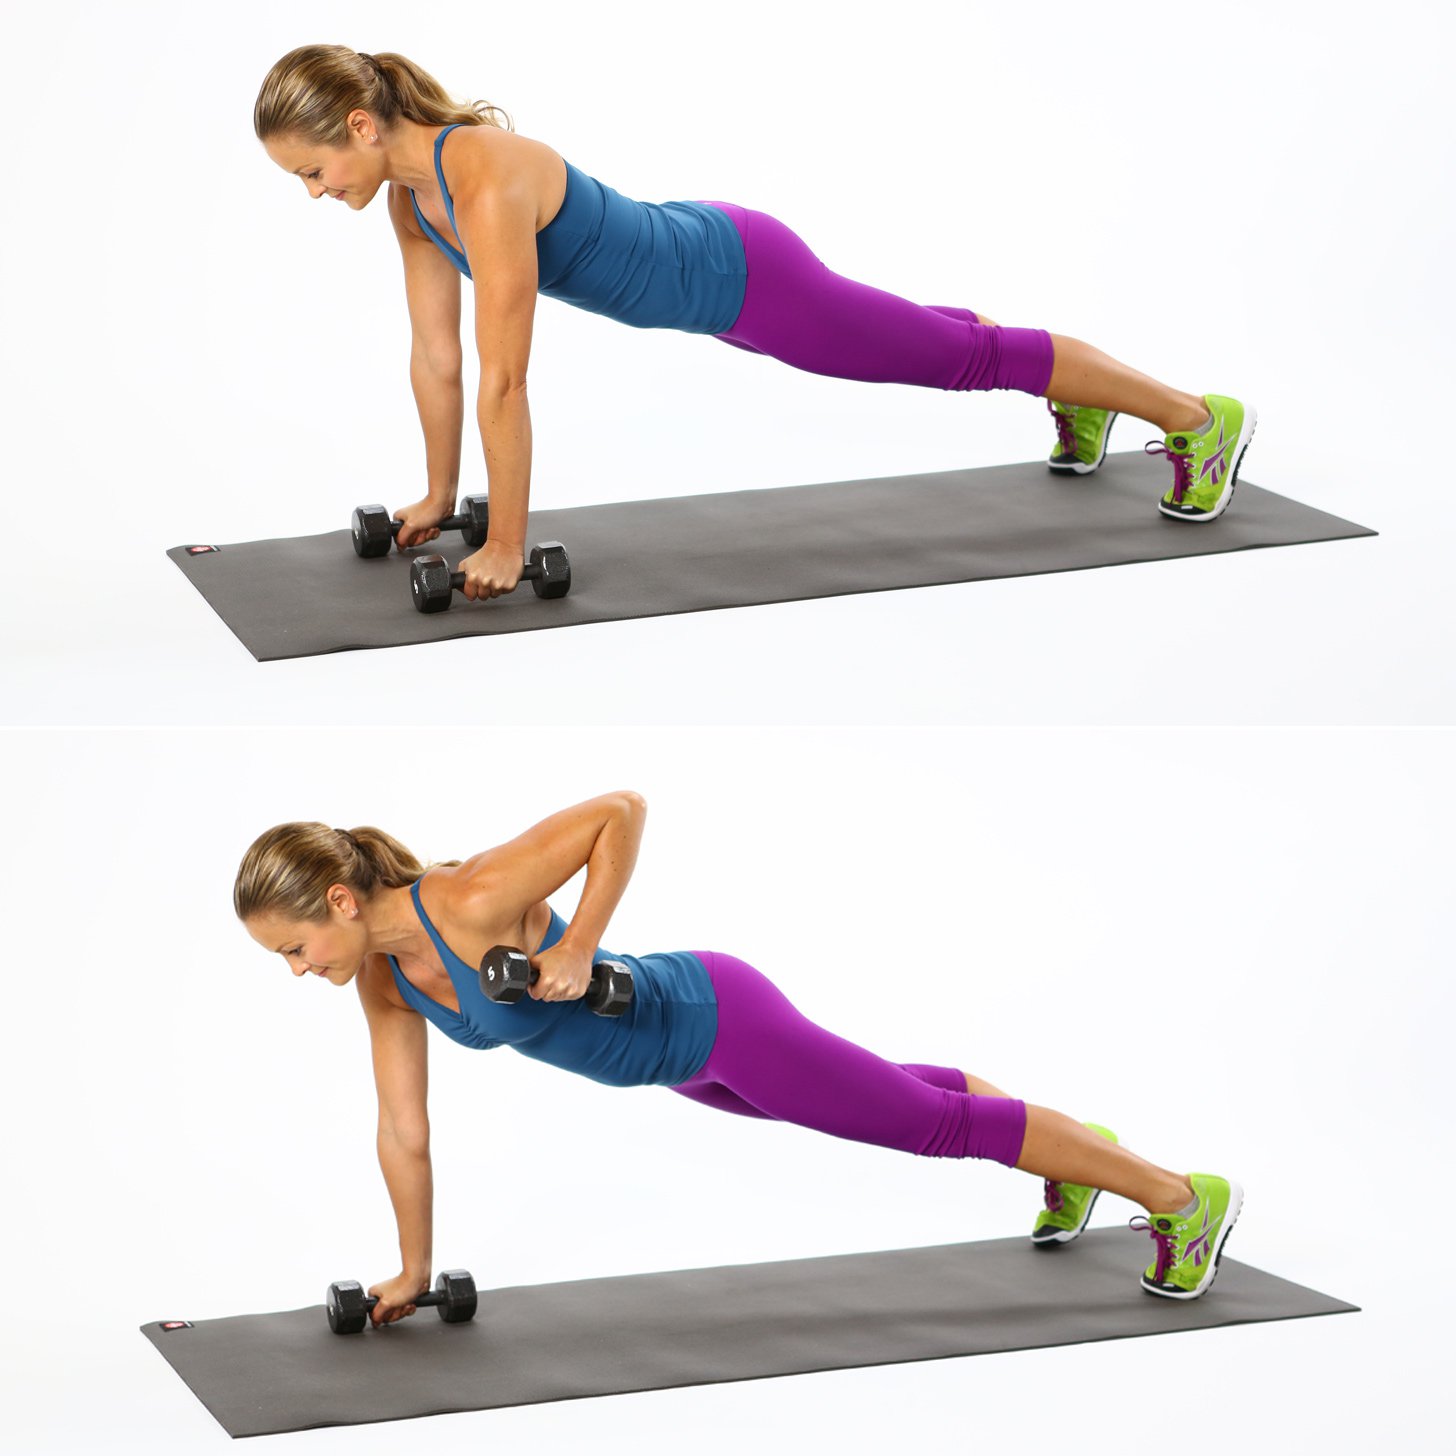 Better extension. Planka spini планка для спины. Упражнения на спину. Планка с гантелями. Упражнения для спины для женщин.